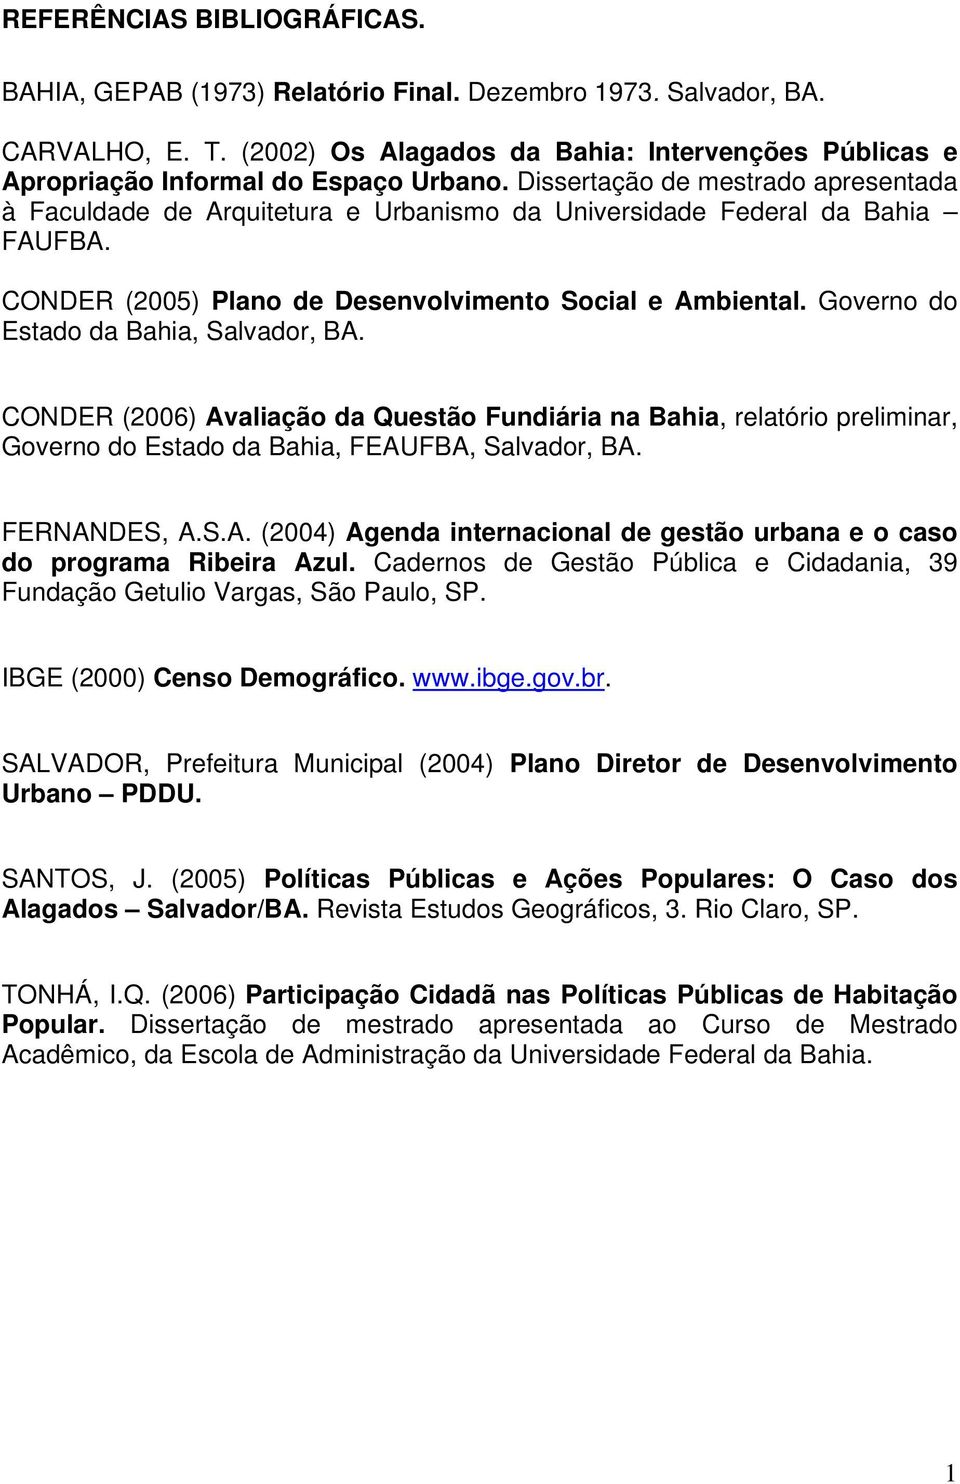 Dissertação de mestrado apresentada à Faculdade de Arquitetura e Urbanismo da Universidade Federal da Bahia FAUFBA. CONDER (2005) Plano de Desenvolvimento Social e Ambiental.